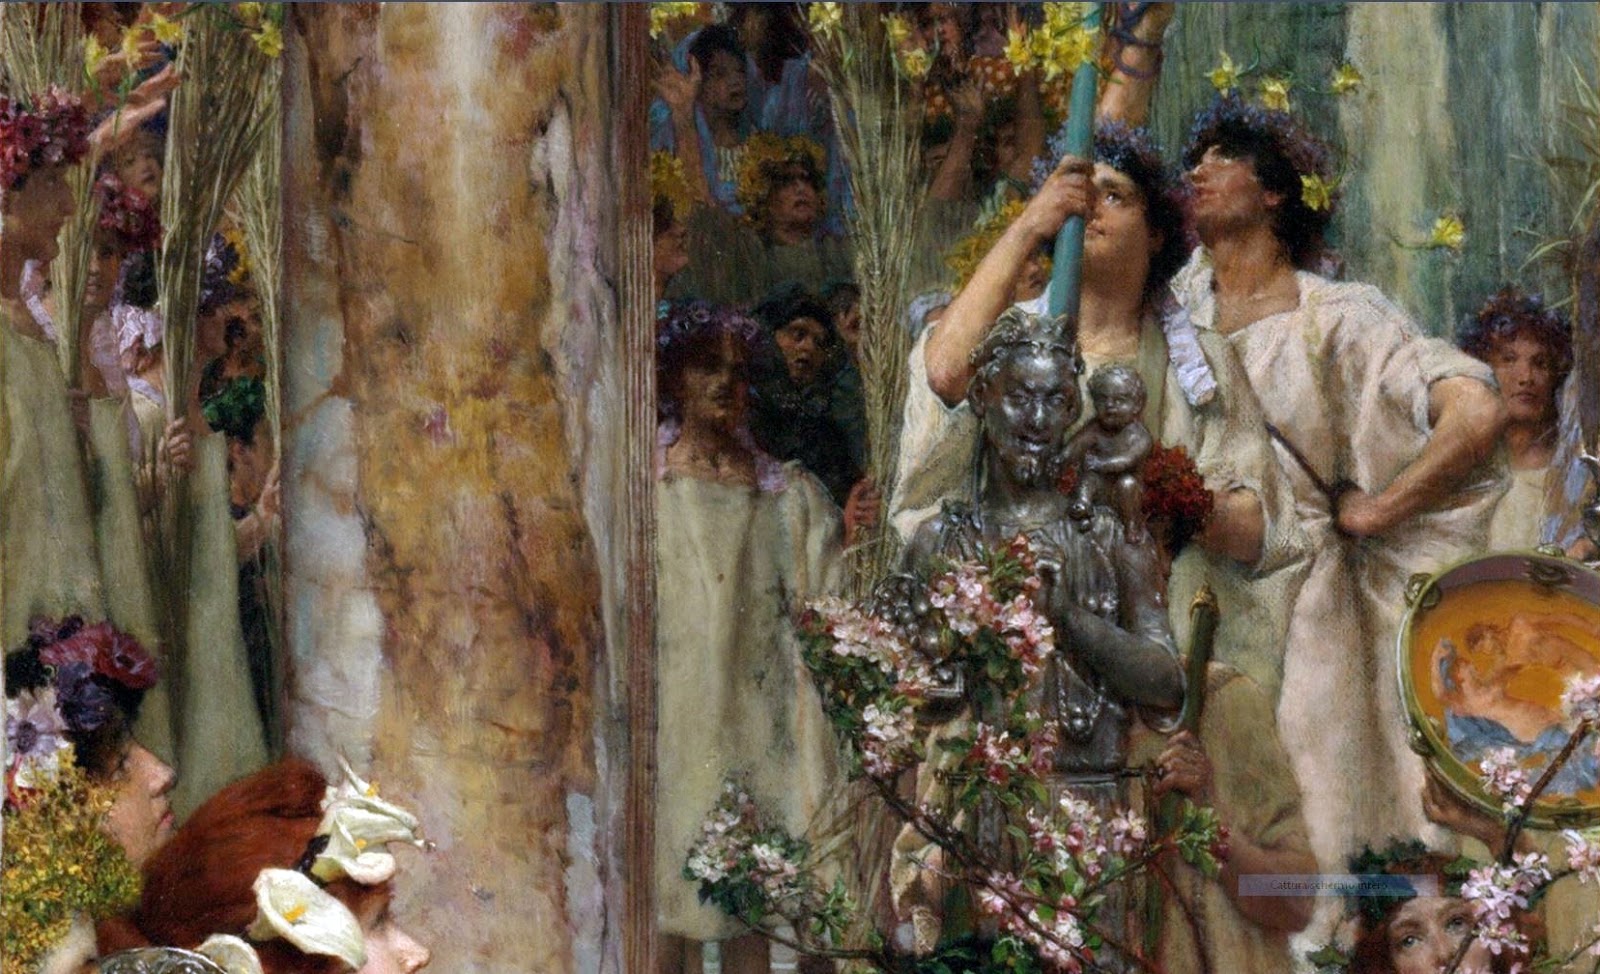 Sir+Lawrence+Alma+Tadema-1836-1912 (73).JPG